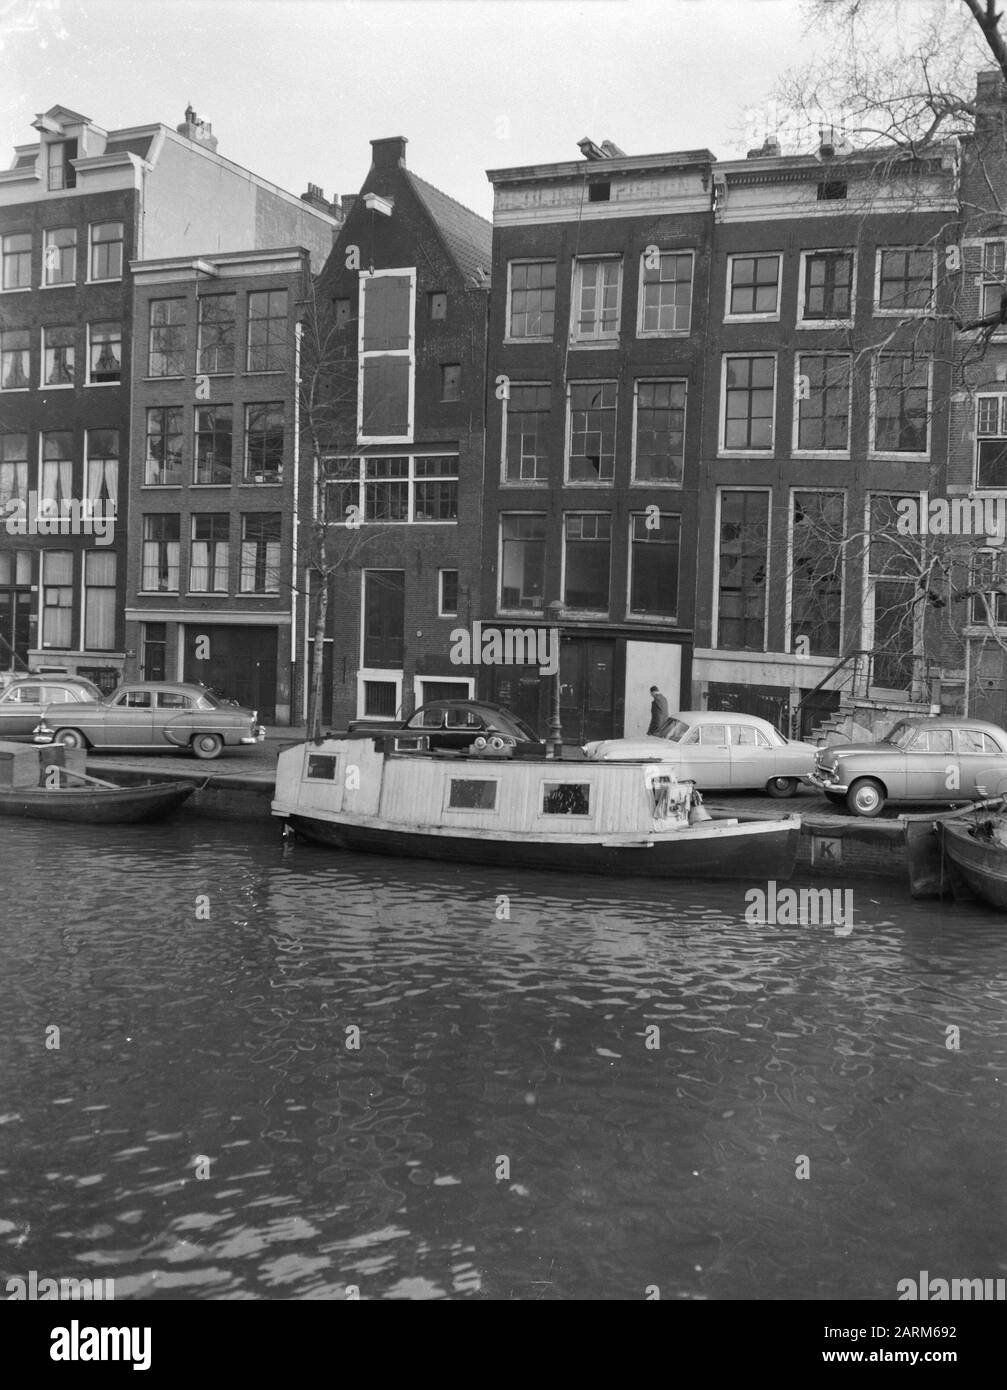 L'Annexe secrète Maison d'Anne Frank Date: 20 mars 1957 lieu: Amsterdam, Noord-Holland mots clés: Maisons de canal, maisons résidentielles Banque D'Images